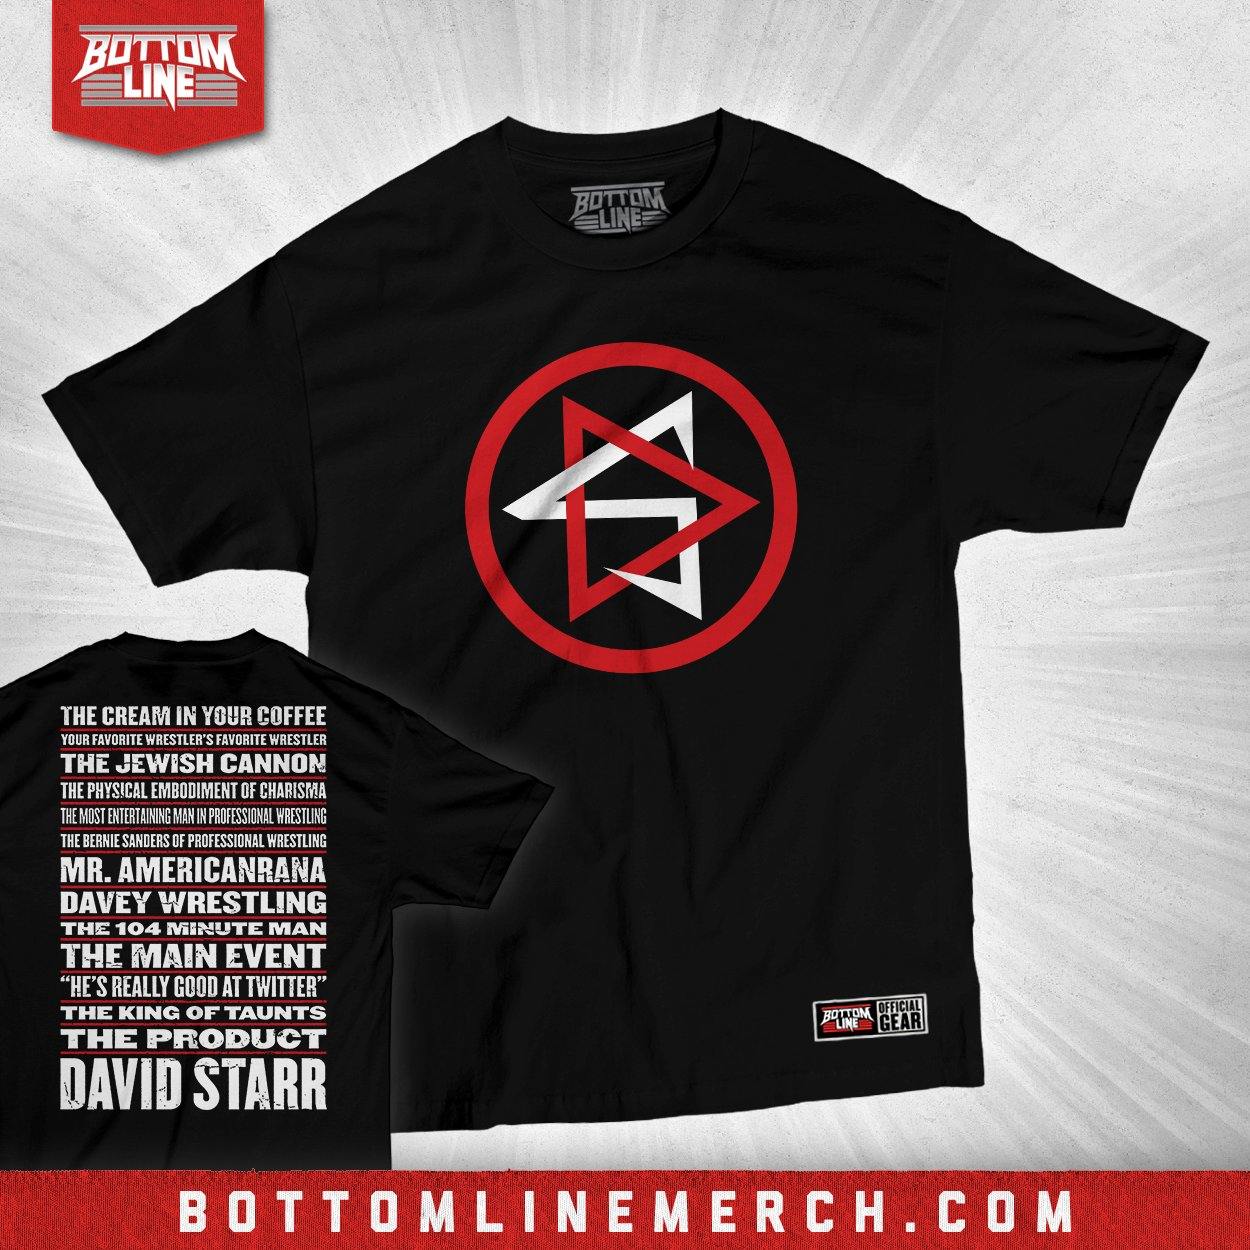 Buy Now – David Starr "DS Nicknames" Shirt – Wrestler & Wrestling Merch – Bottom Line